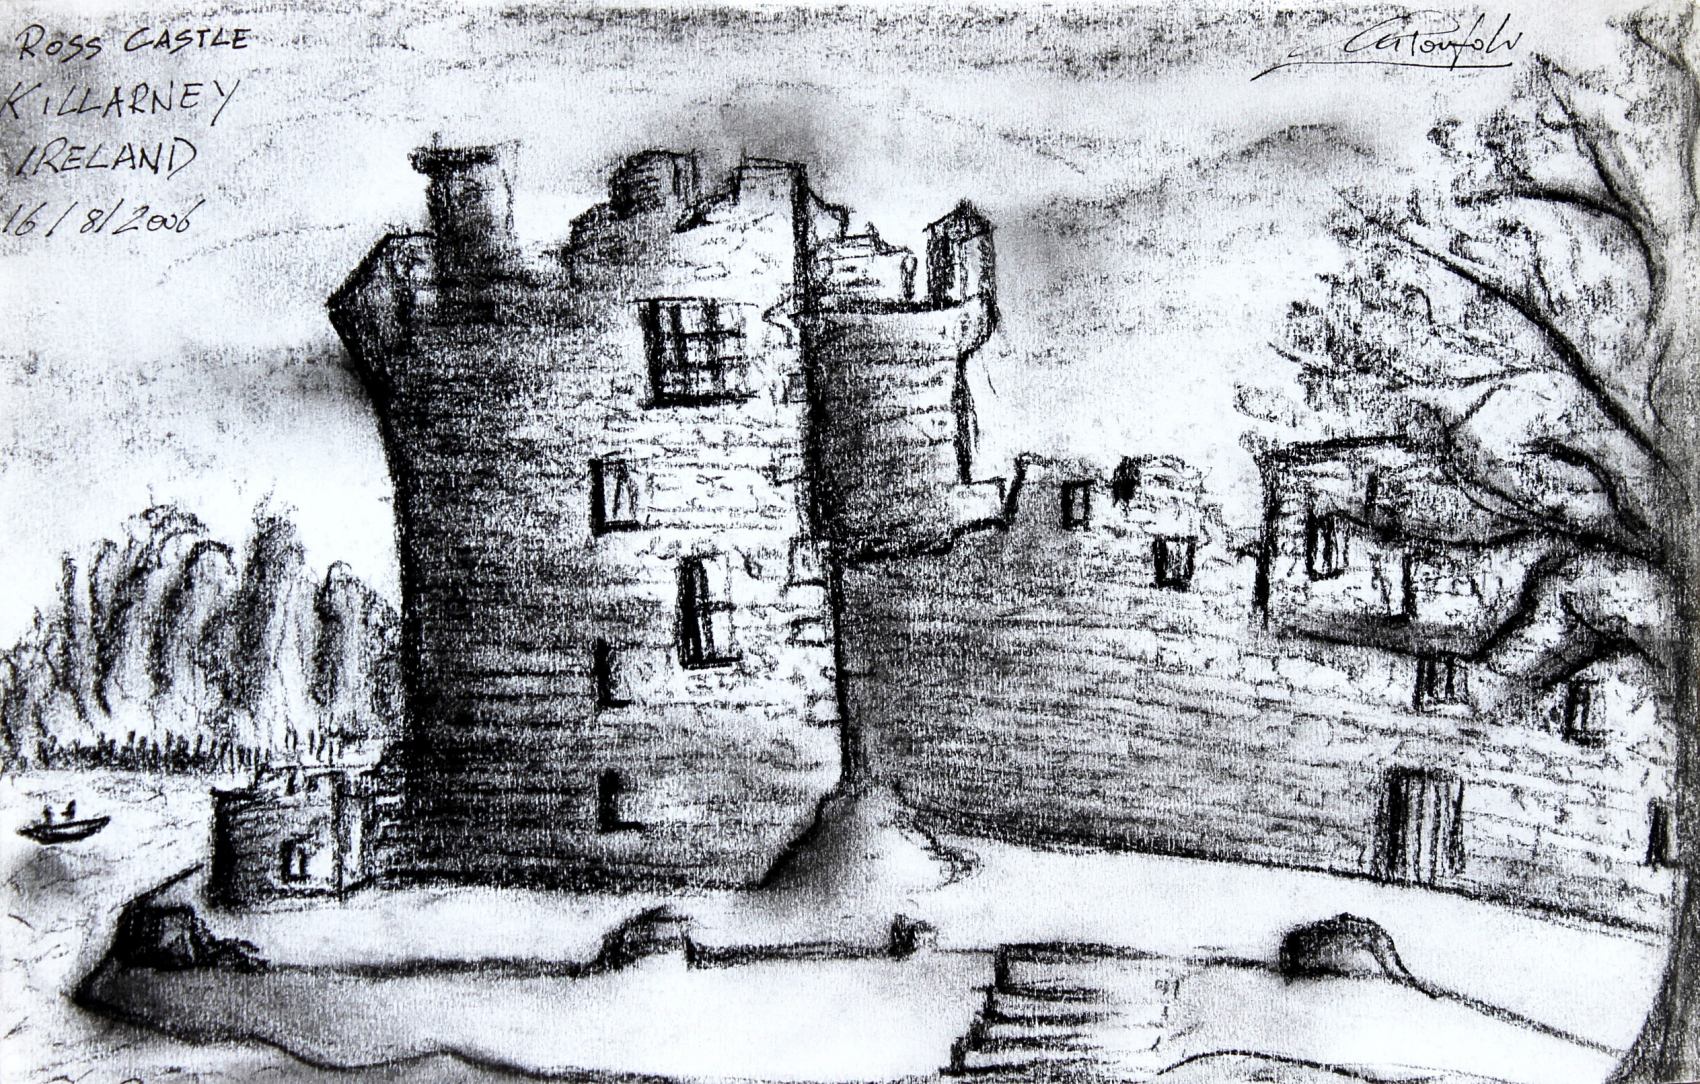 Irlanda, Ross Castle - Killarney 19,20 x 29,90 cm carboncino su carta